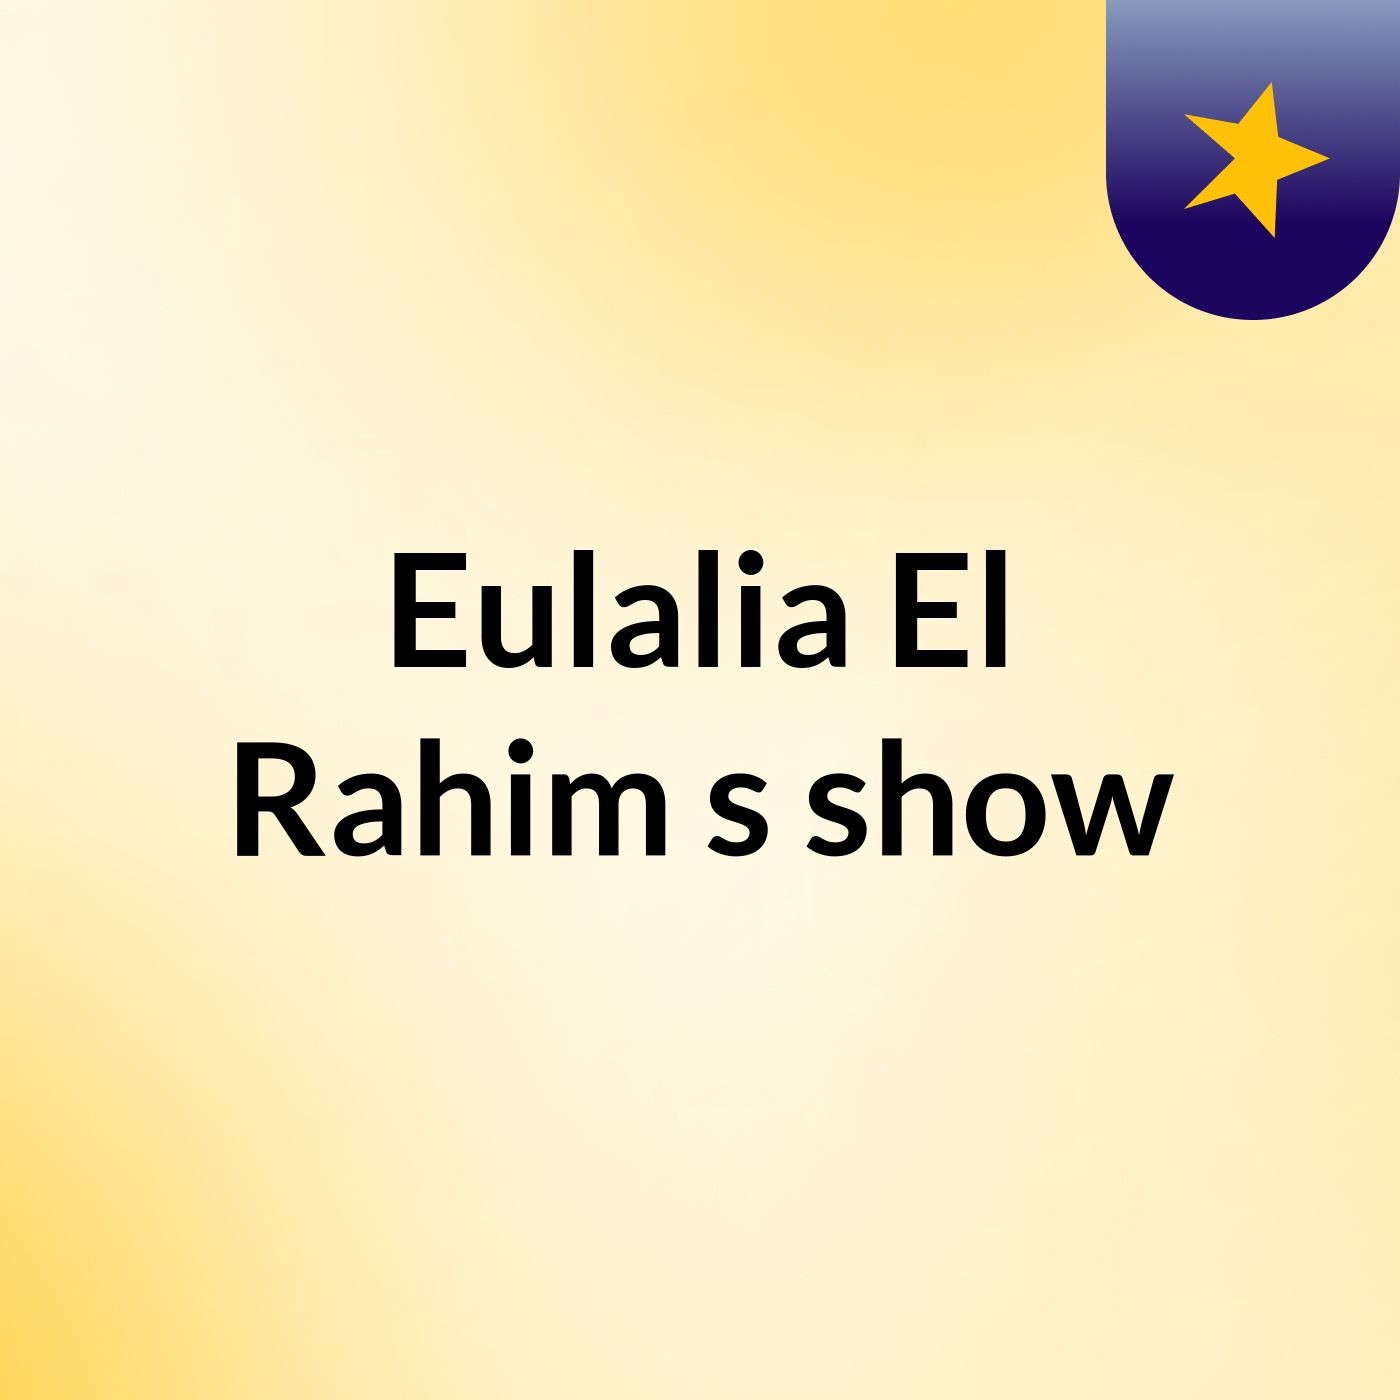 Eulalia El Rahim's show